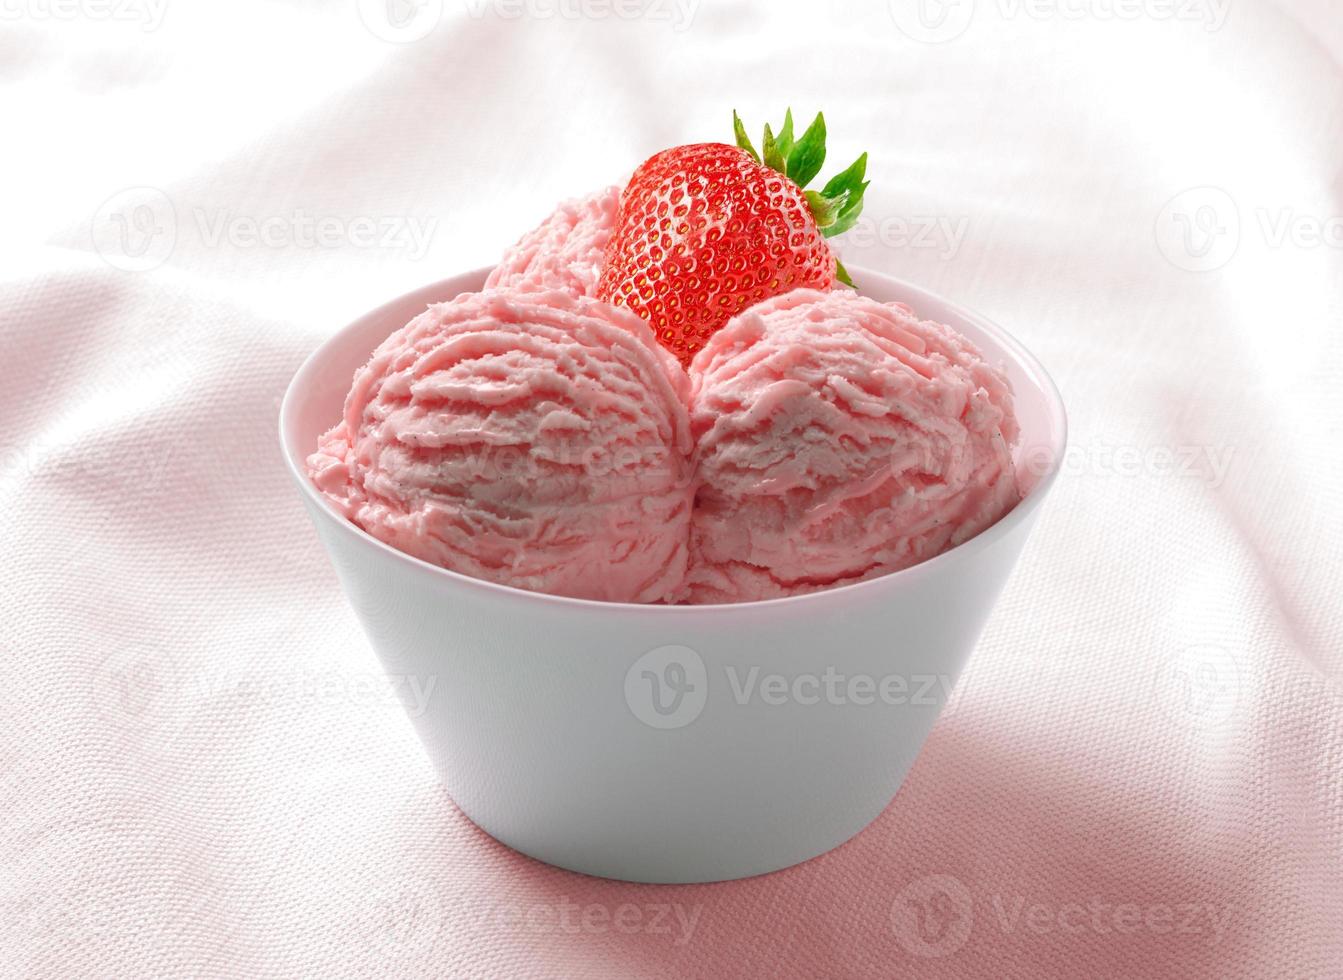 sorvete de morango no copo cerâmico foto